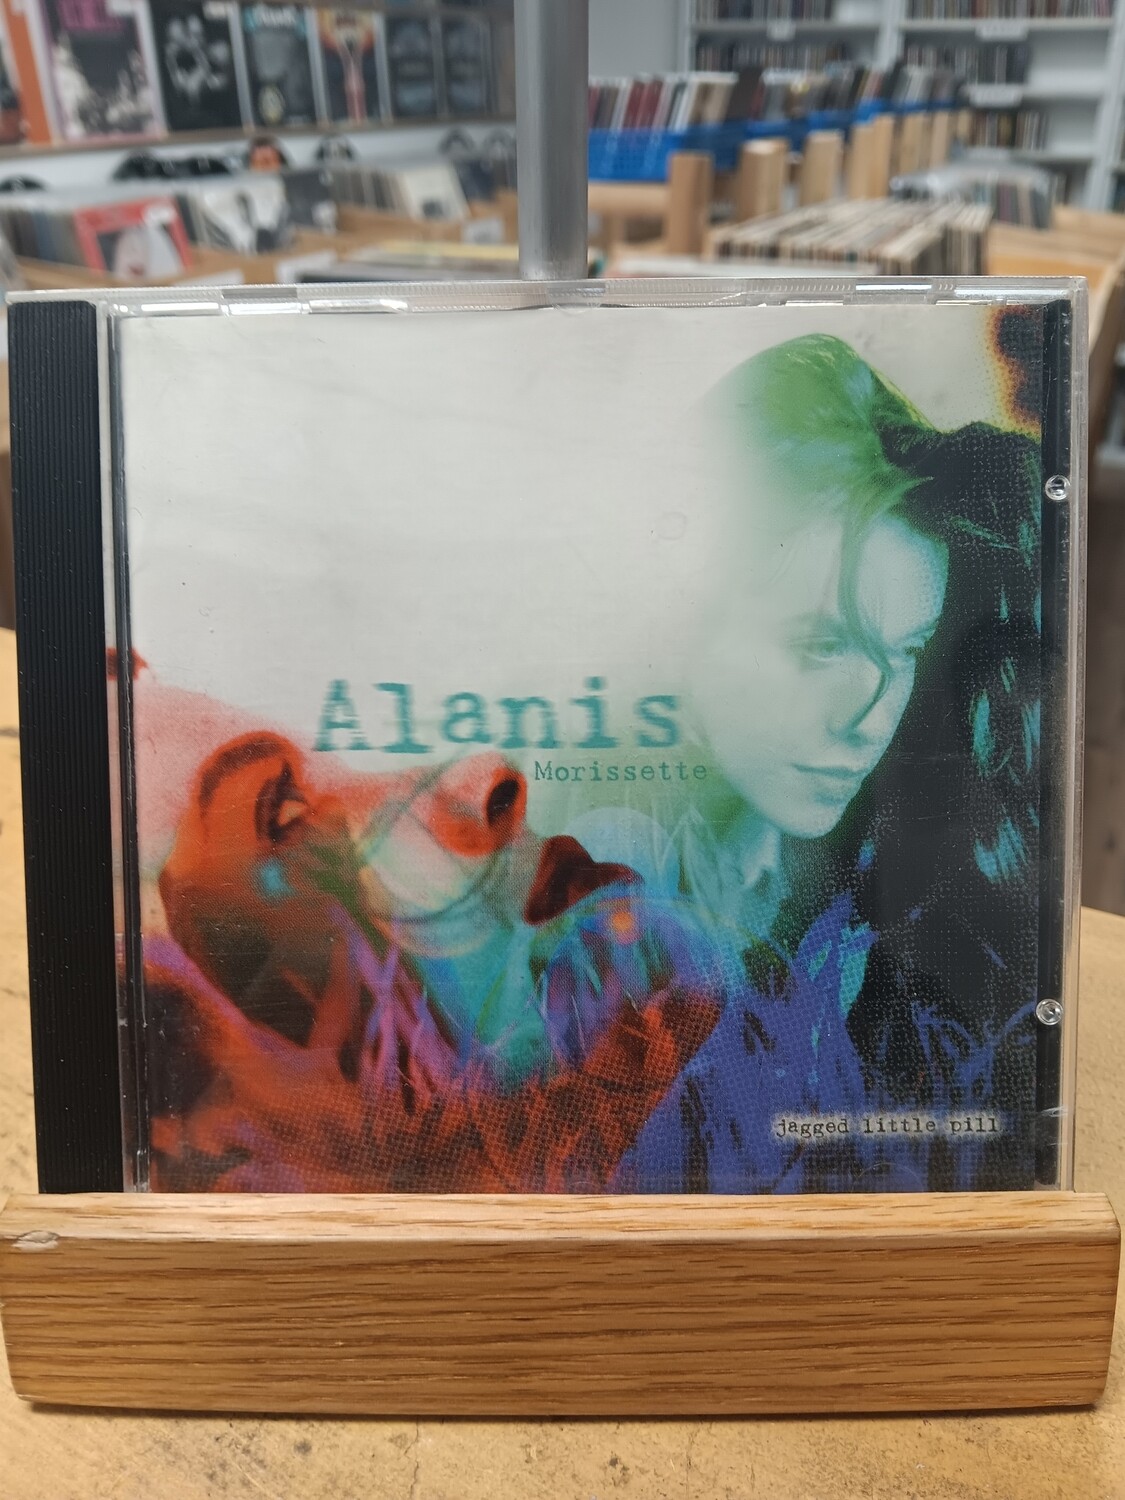 ALANIS MORISSETTE - Jagged little pill (CD)